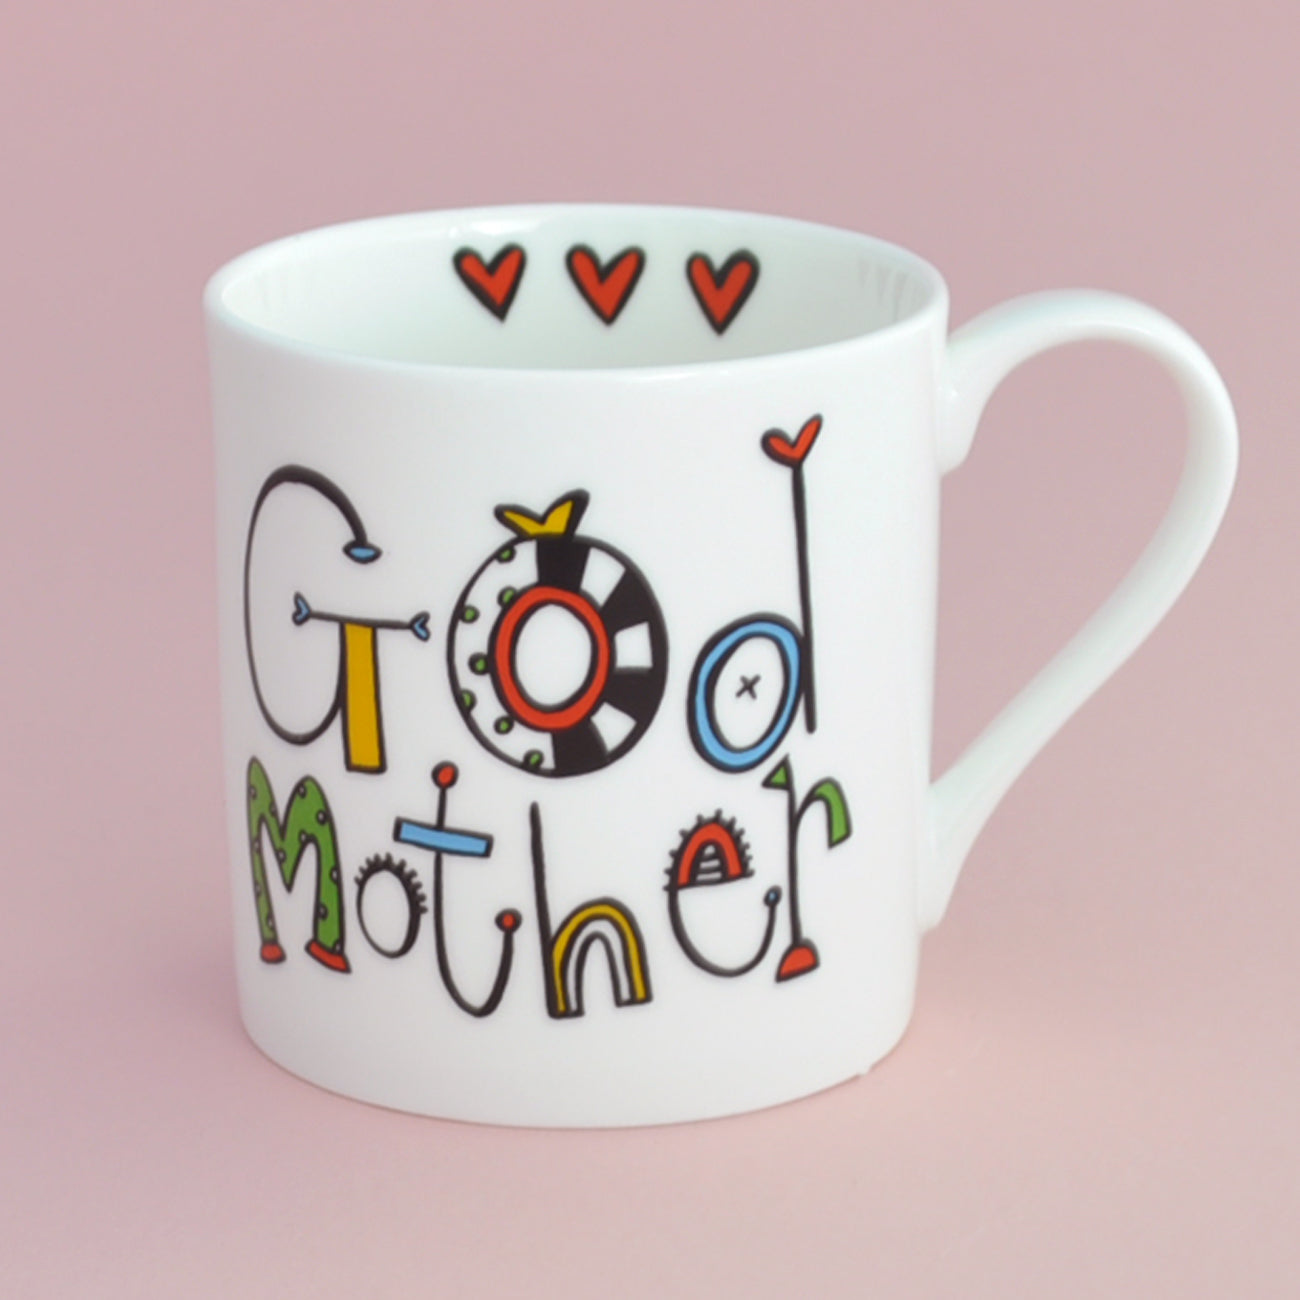 Personalised Godmother Mug